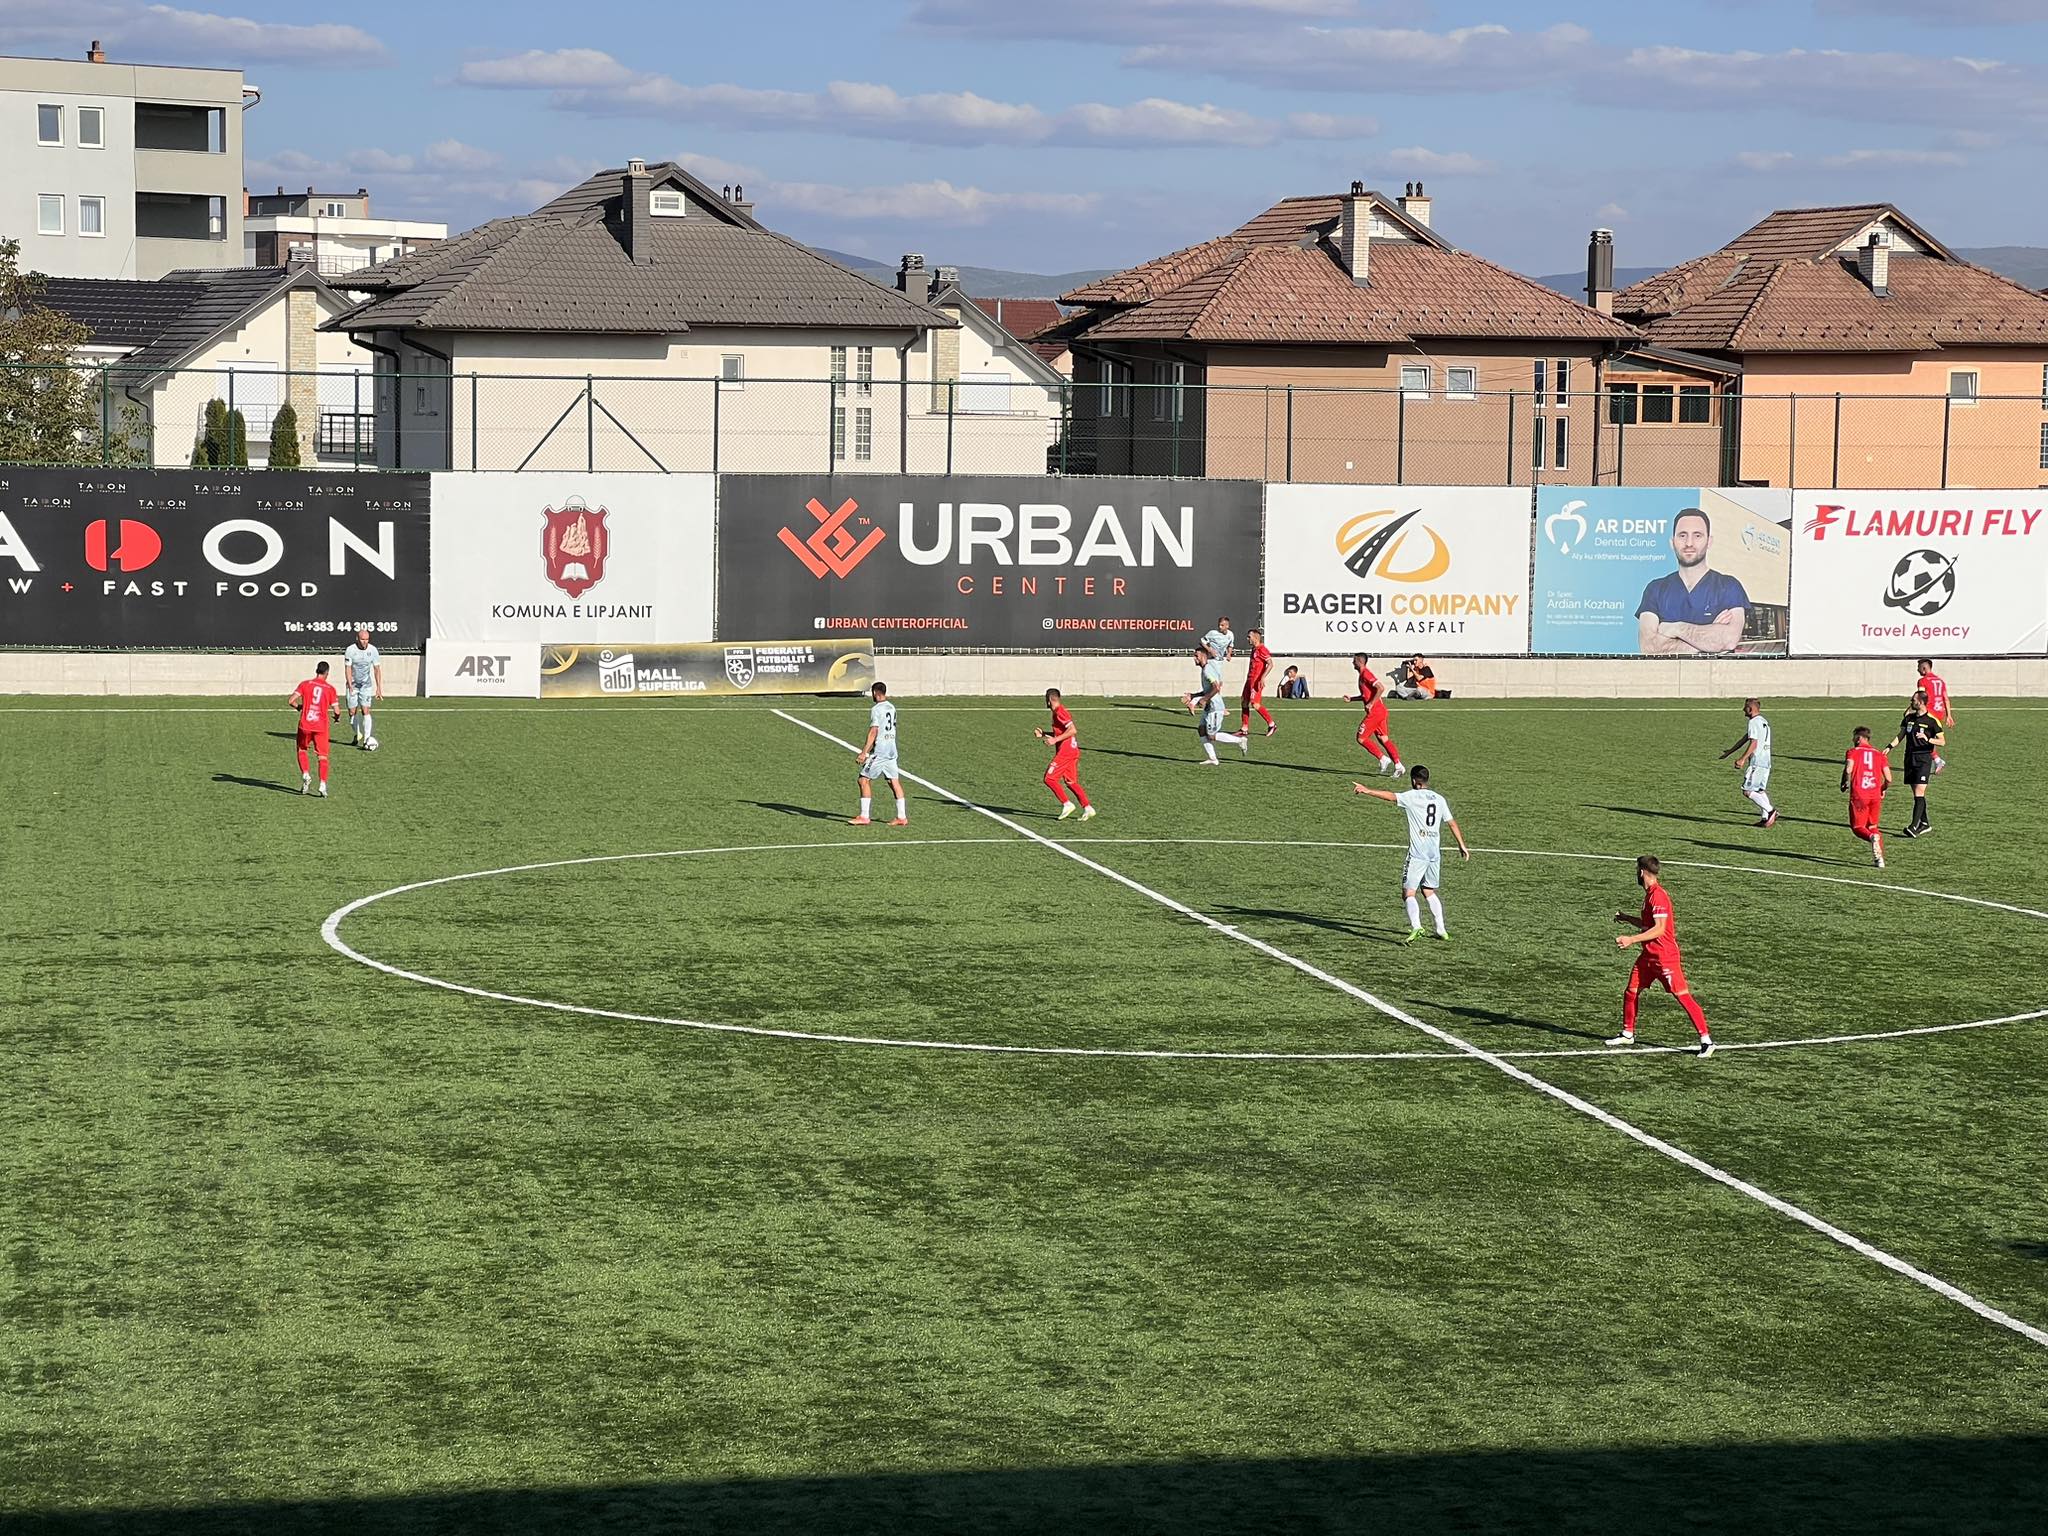 Përfundon pjesa e parë, Fushë Kosova në avantazh ndaj Gjilanit përmes penalltisë